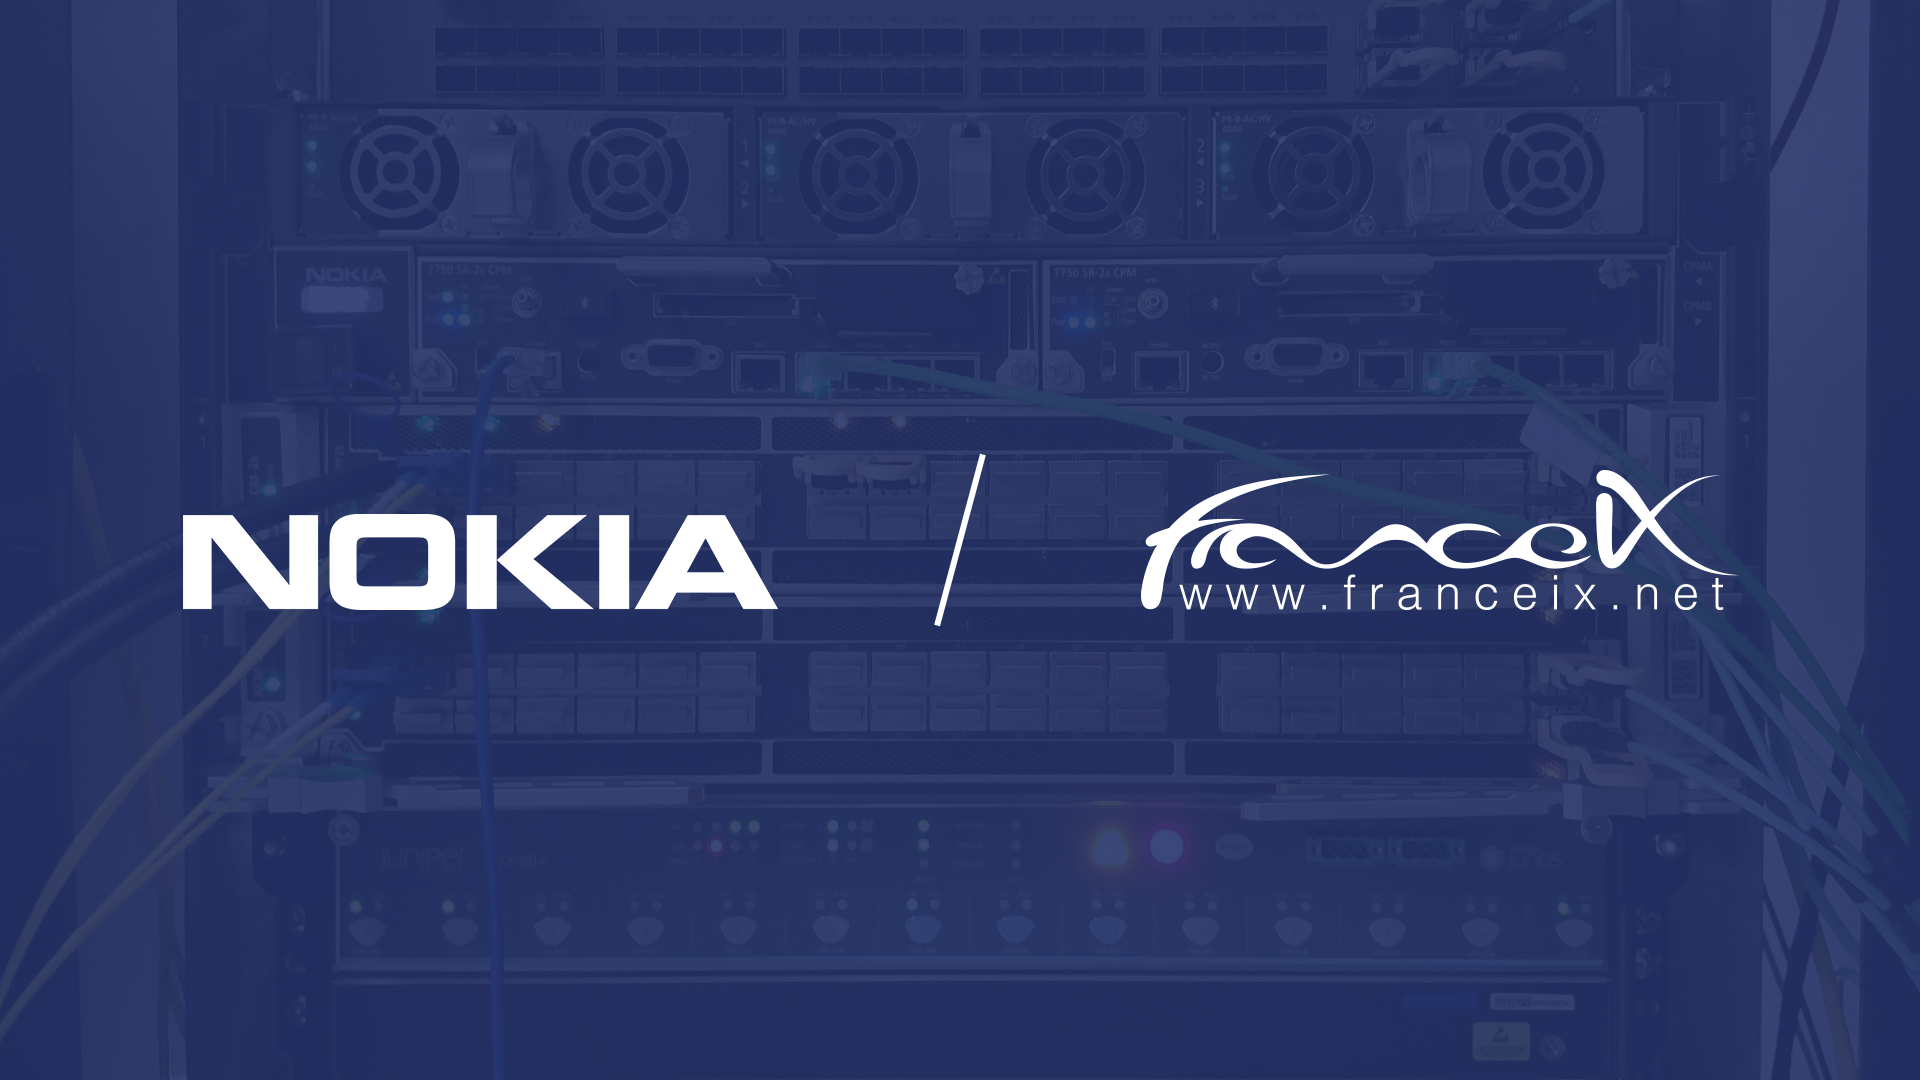 France-IX choisit Nokia pour le renouvellement de son backbone